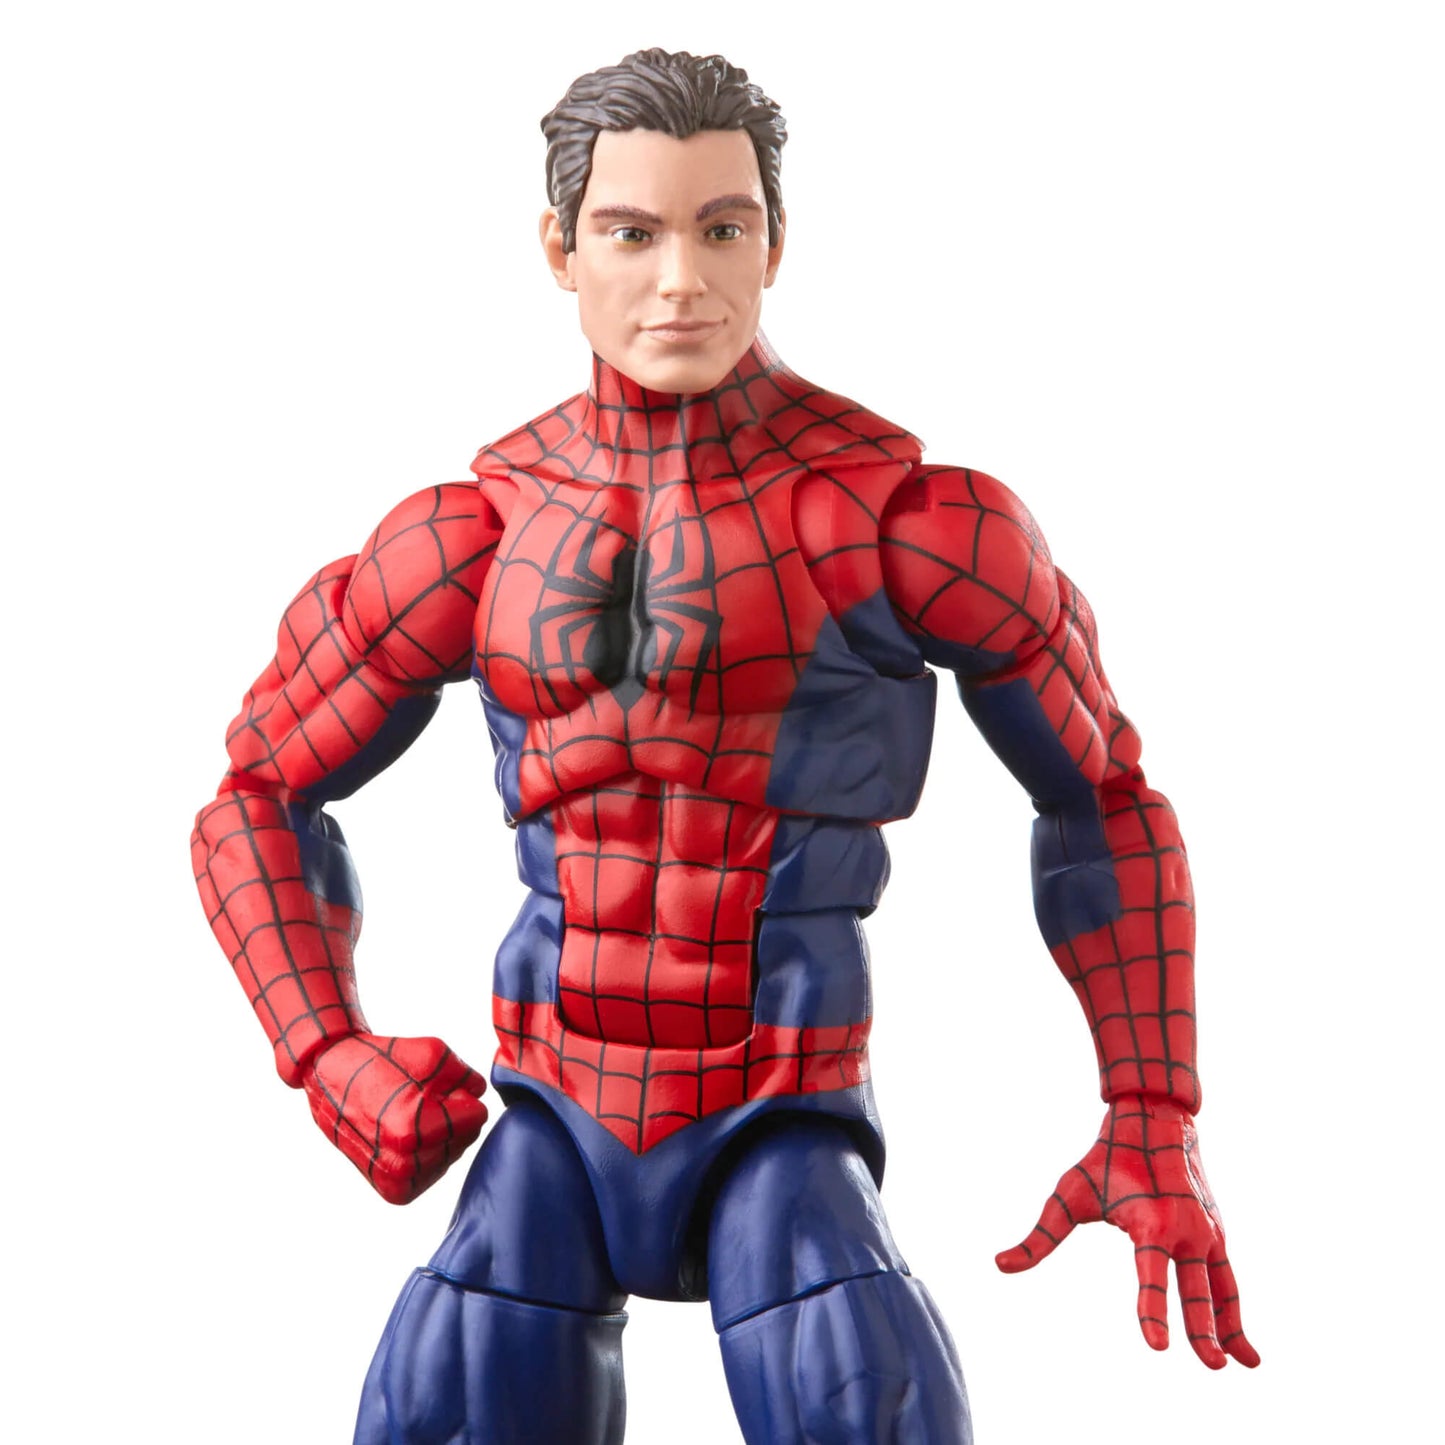 Marvel Legends Marvel’s Spiderman peter parker unmasked action figure